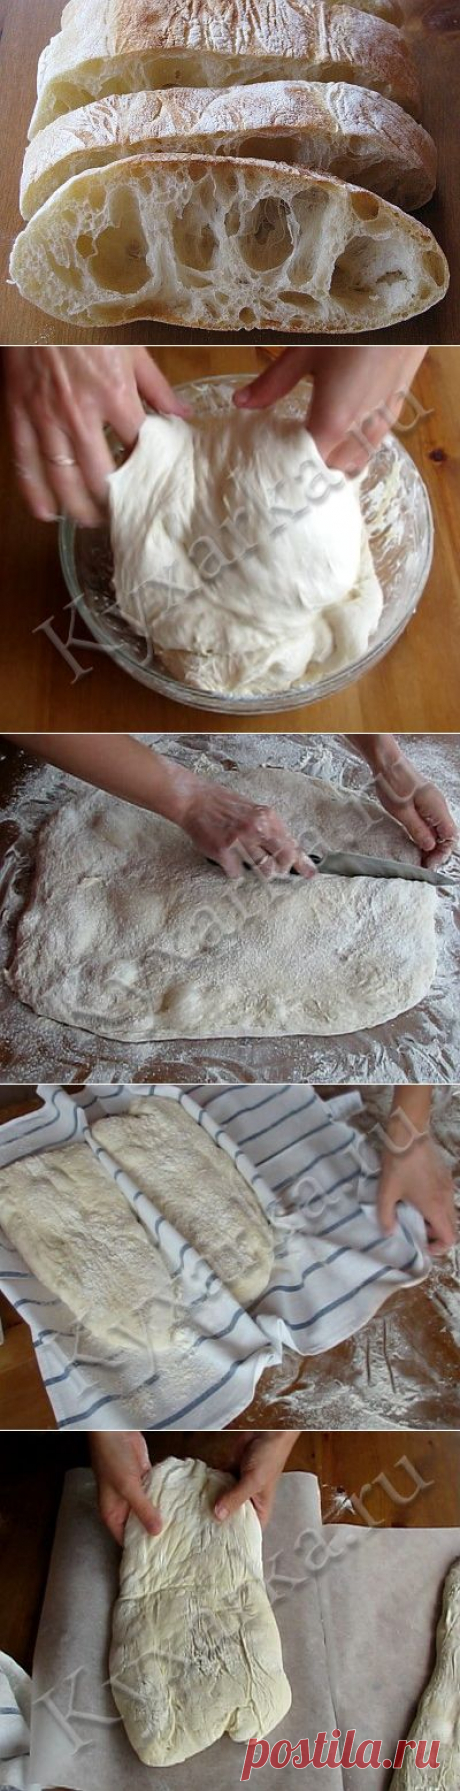 Чиабатта- рецепт приготовления итальянского хлеба.